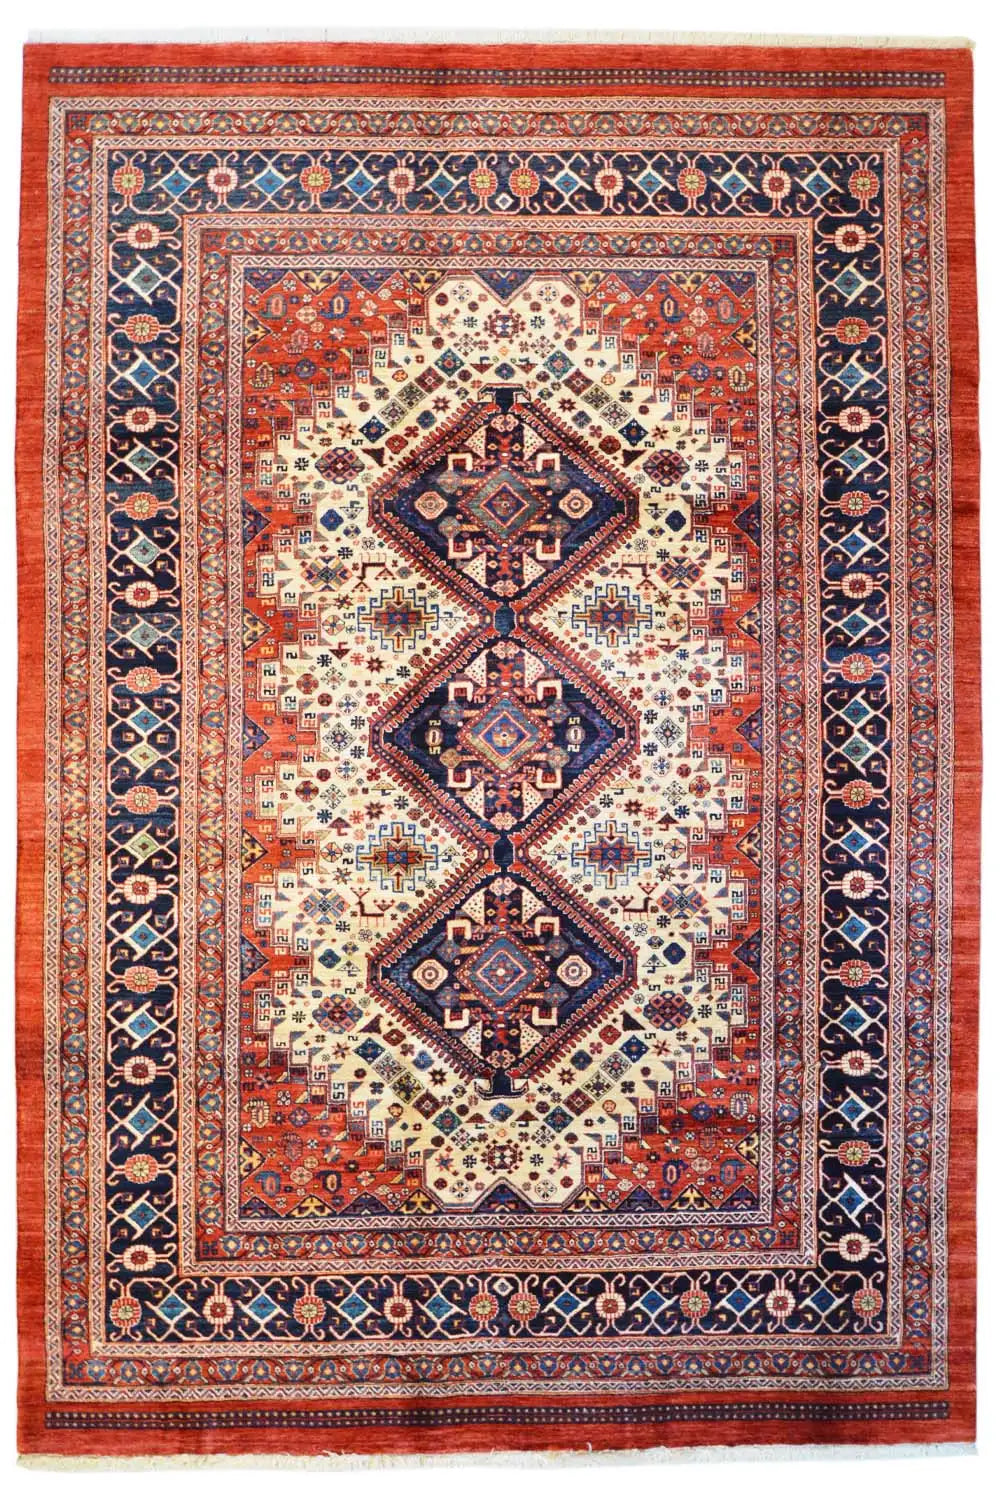 Qashqai Exklusiv 24042 - (296x203cm) - German Carpet Shop